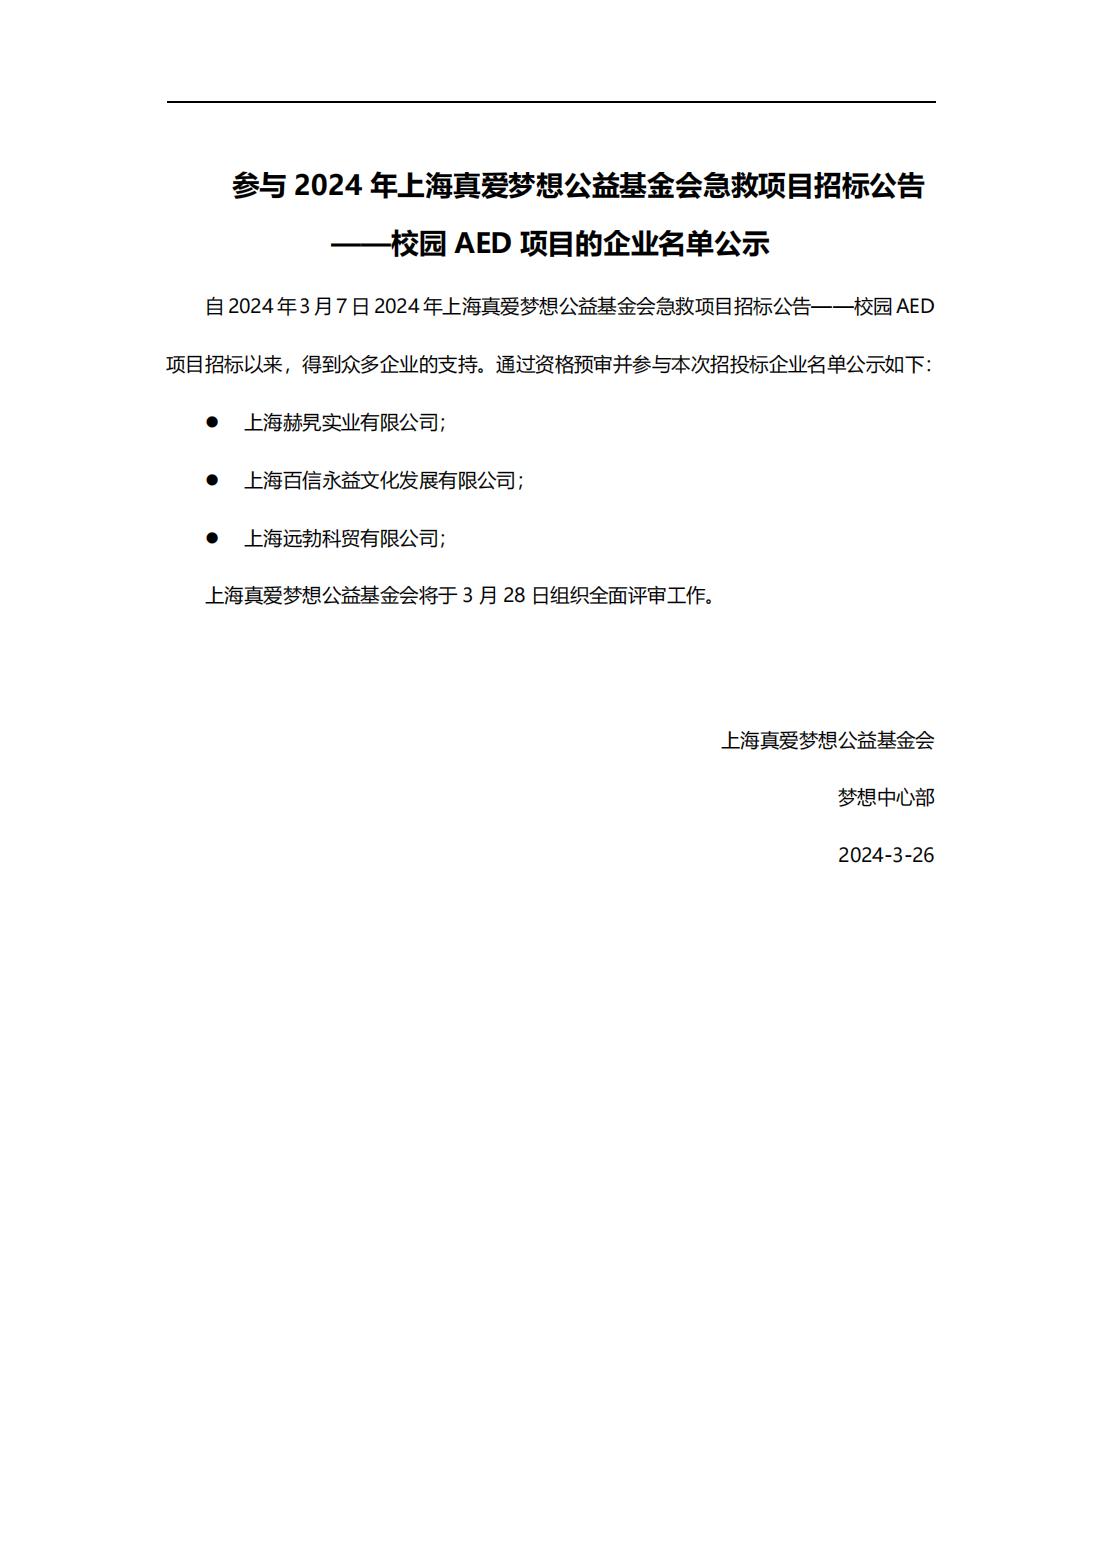 参与2024年上海真爱梦想公益基金会急救项目招标公告——校园AED项目的企业名单公示_00